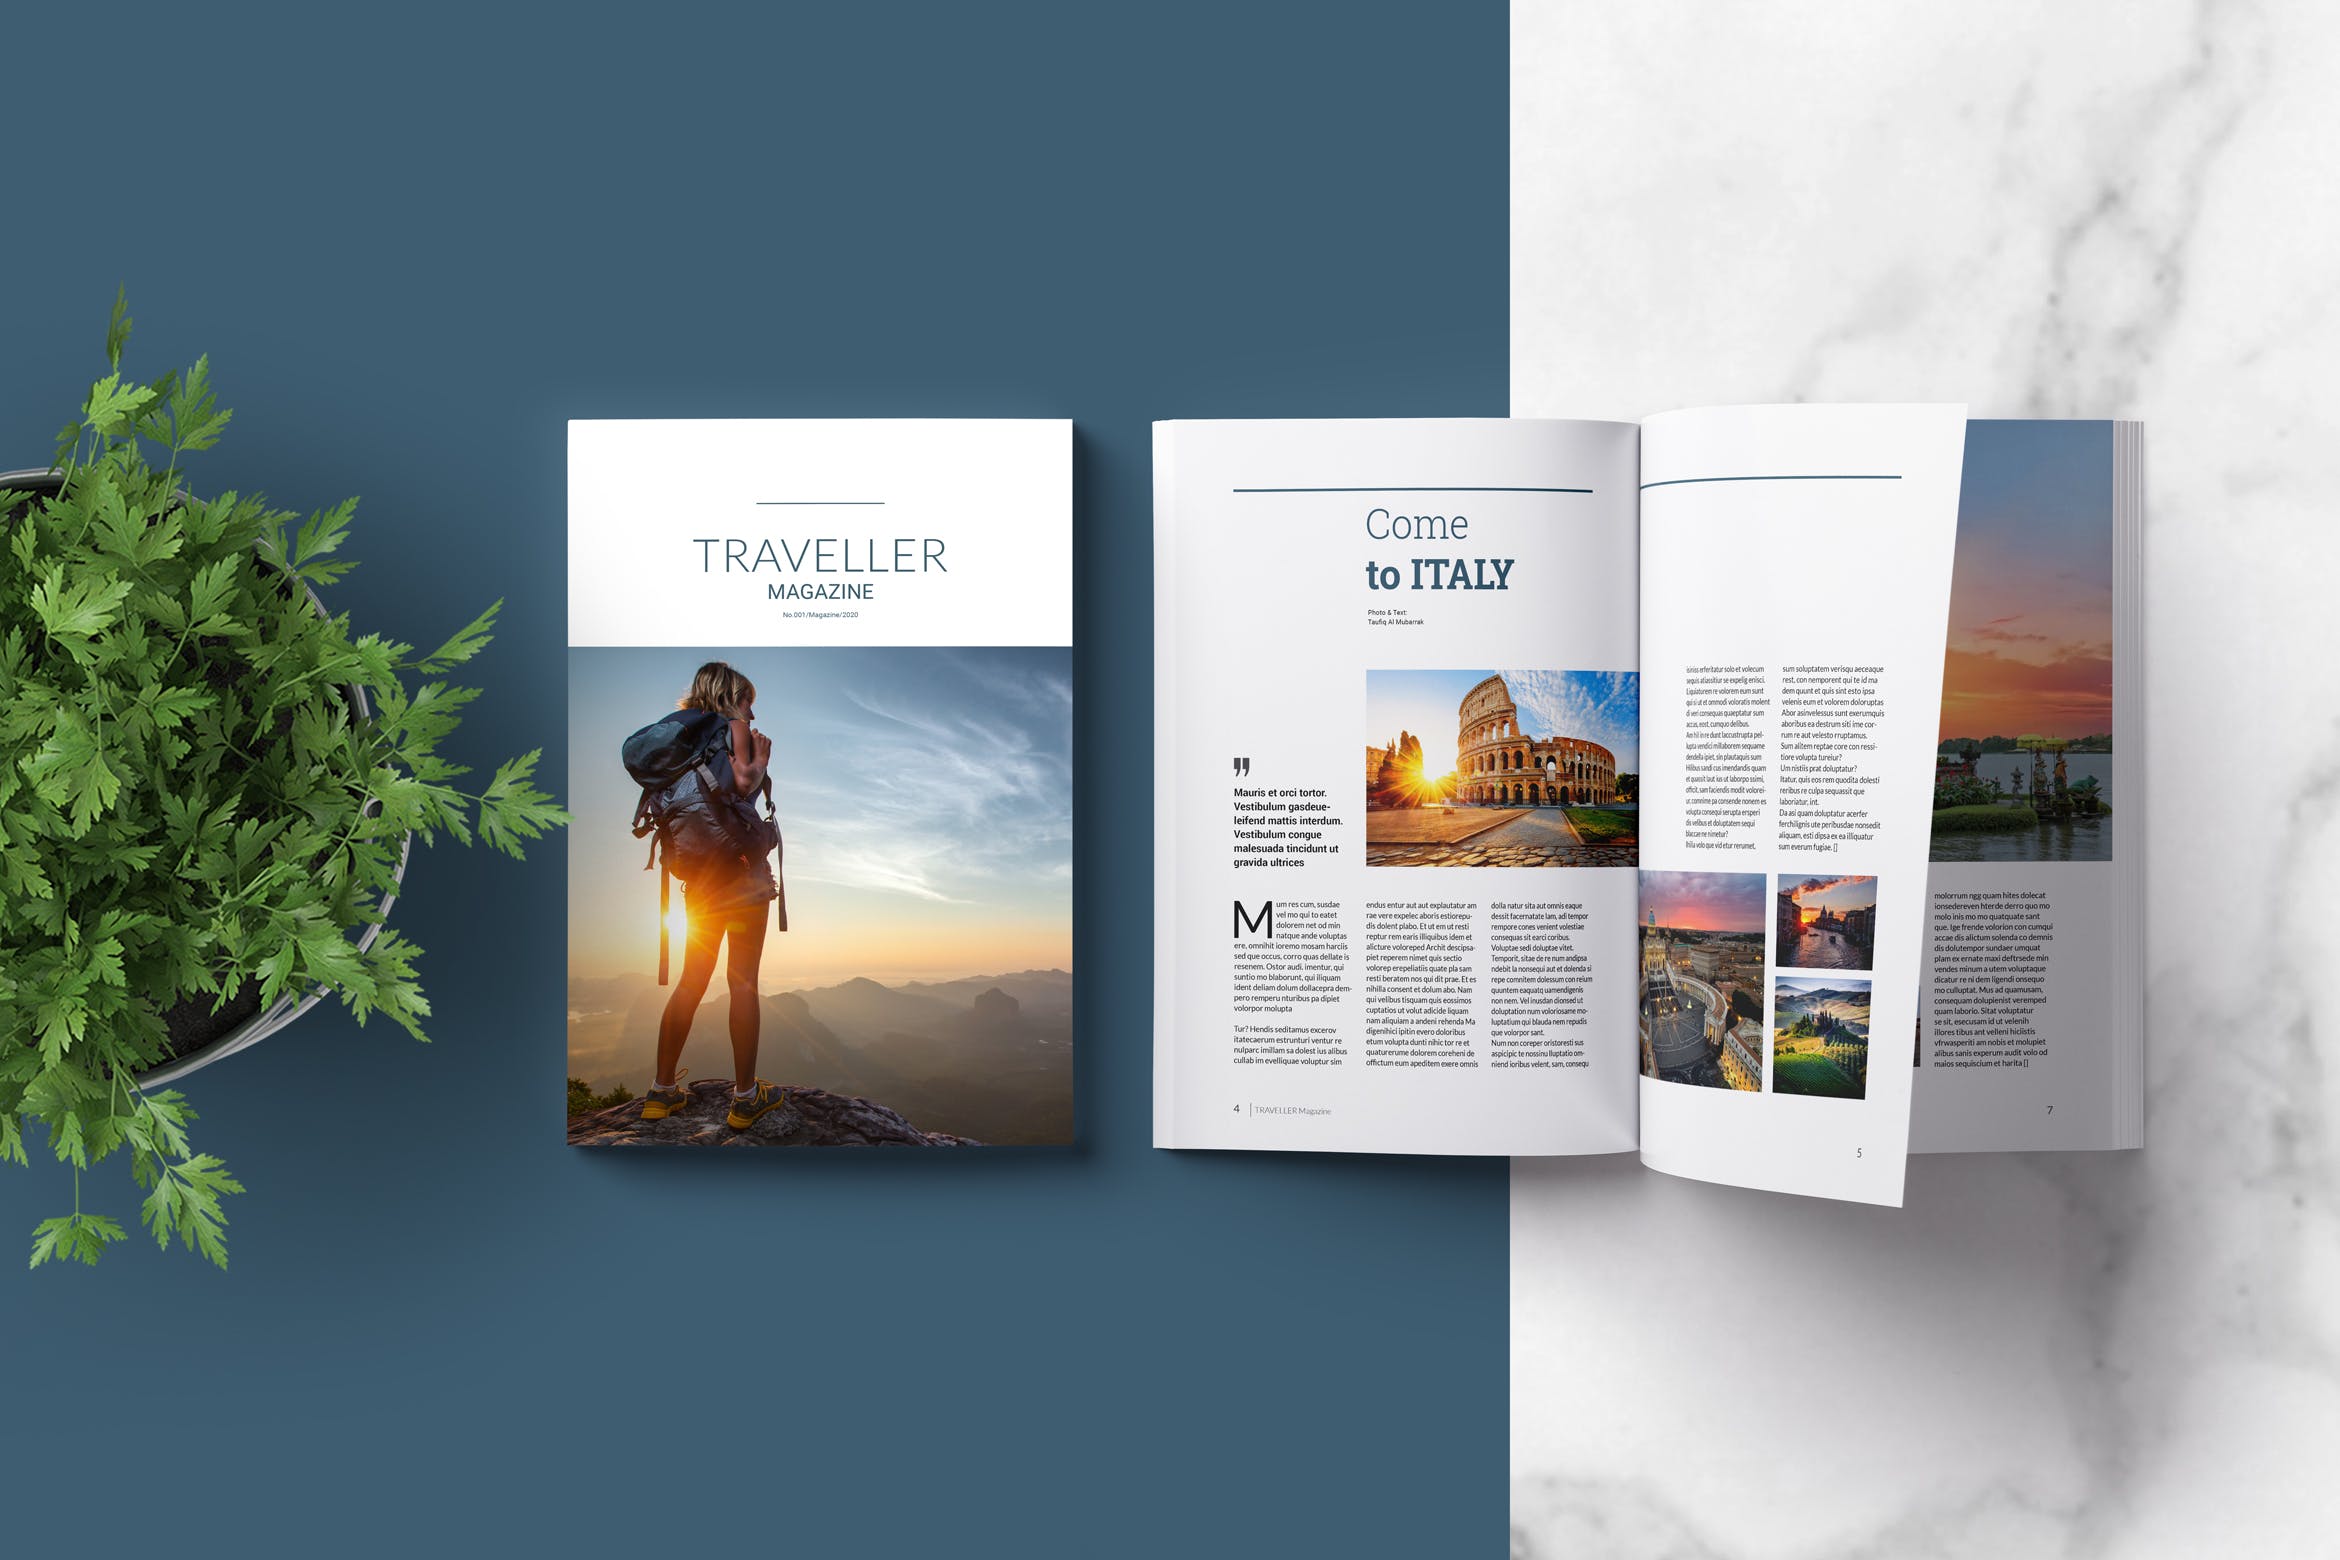 旅行者旅游主题杂志版式设计模板 Indesign Magazine Template插图